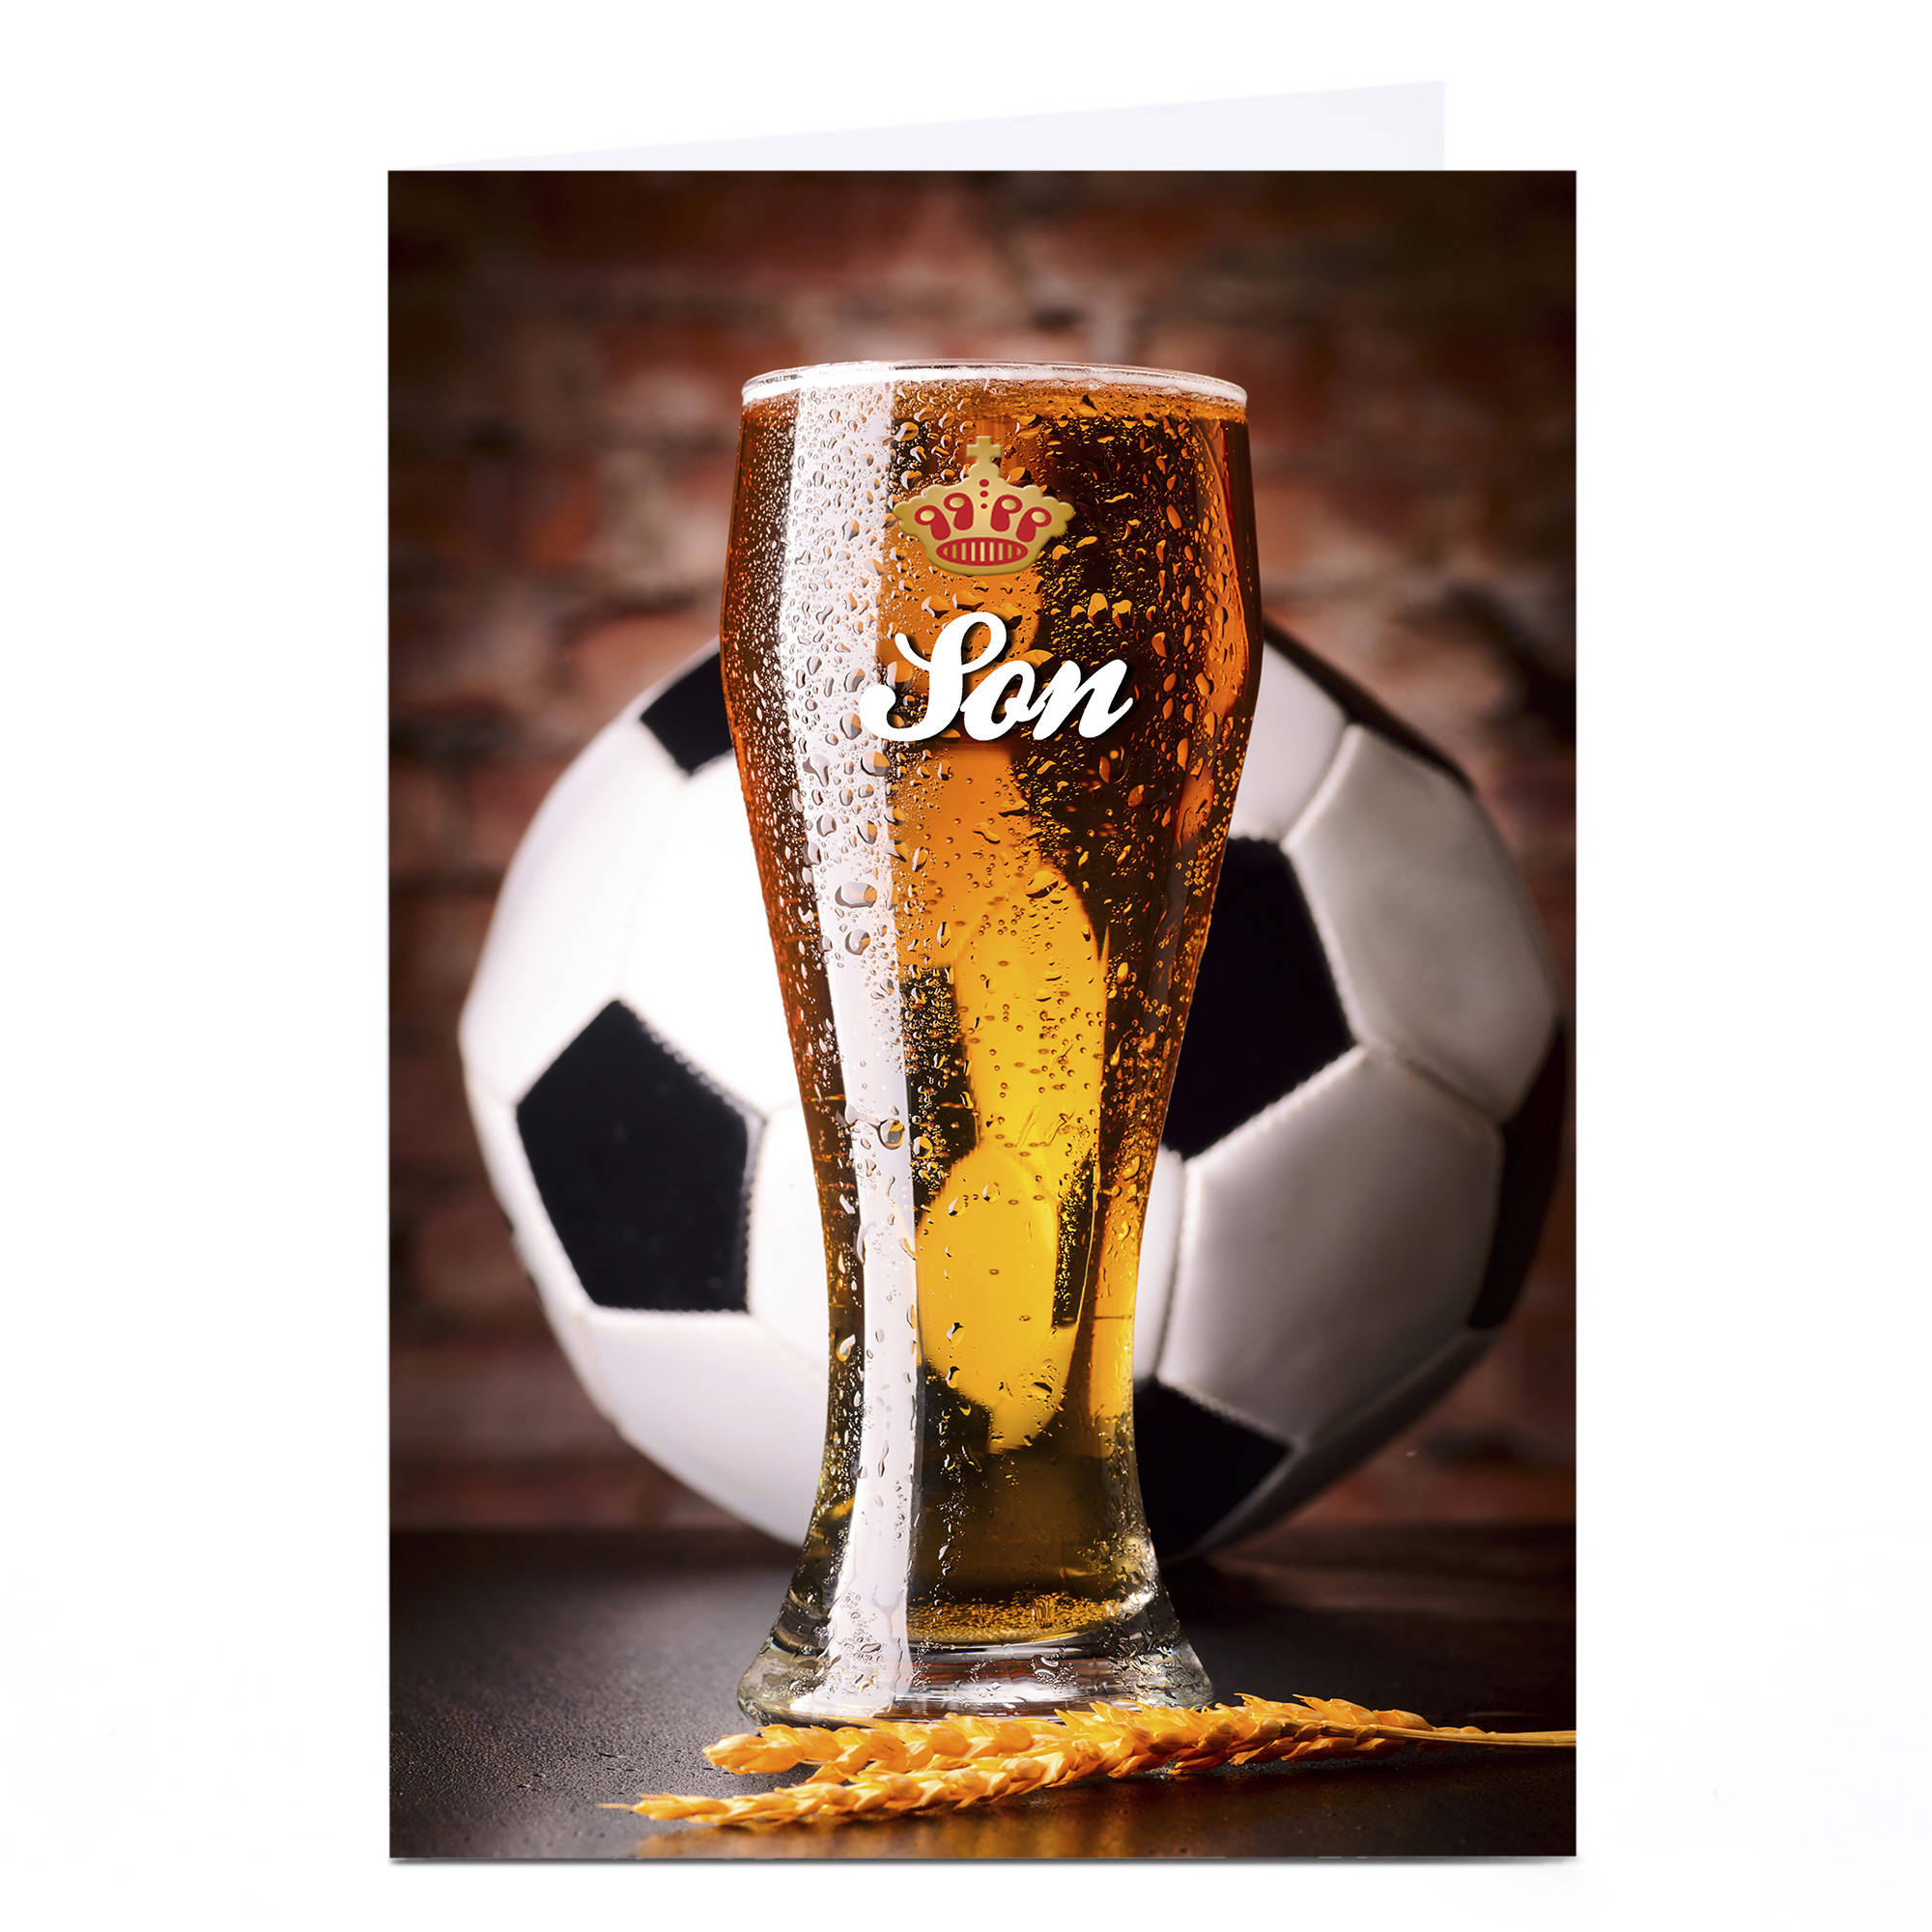 Personalised Card - Football & Beer, Son